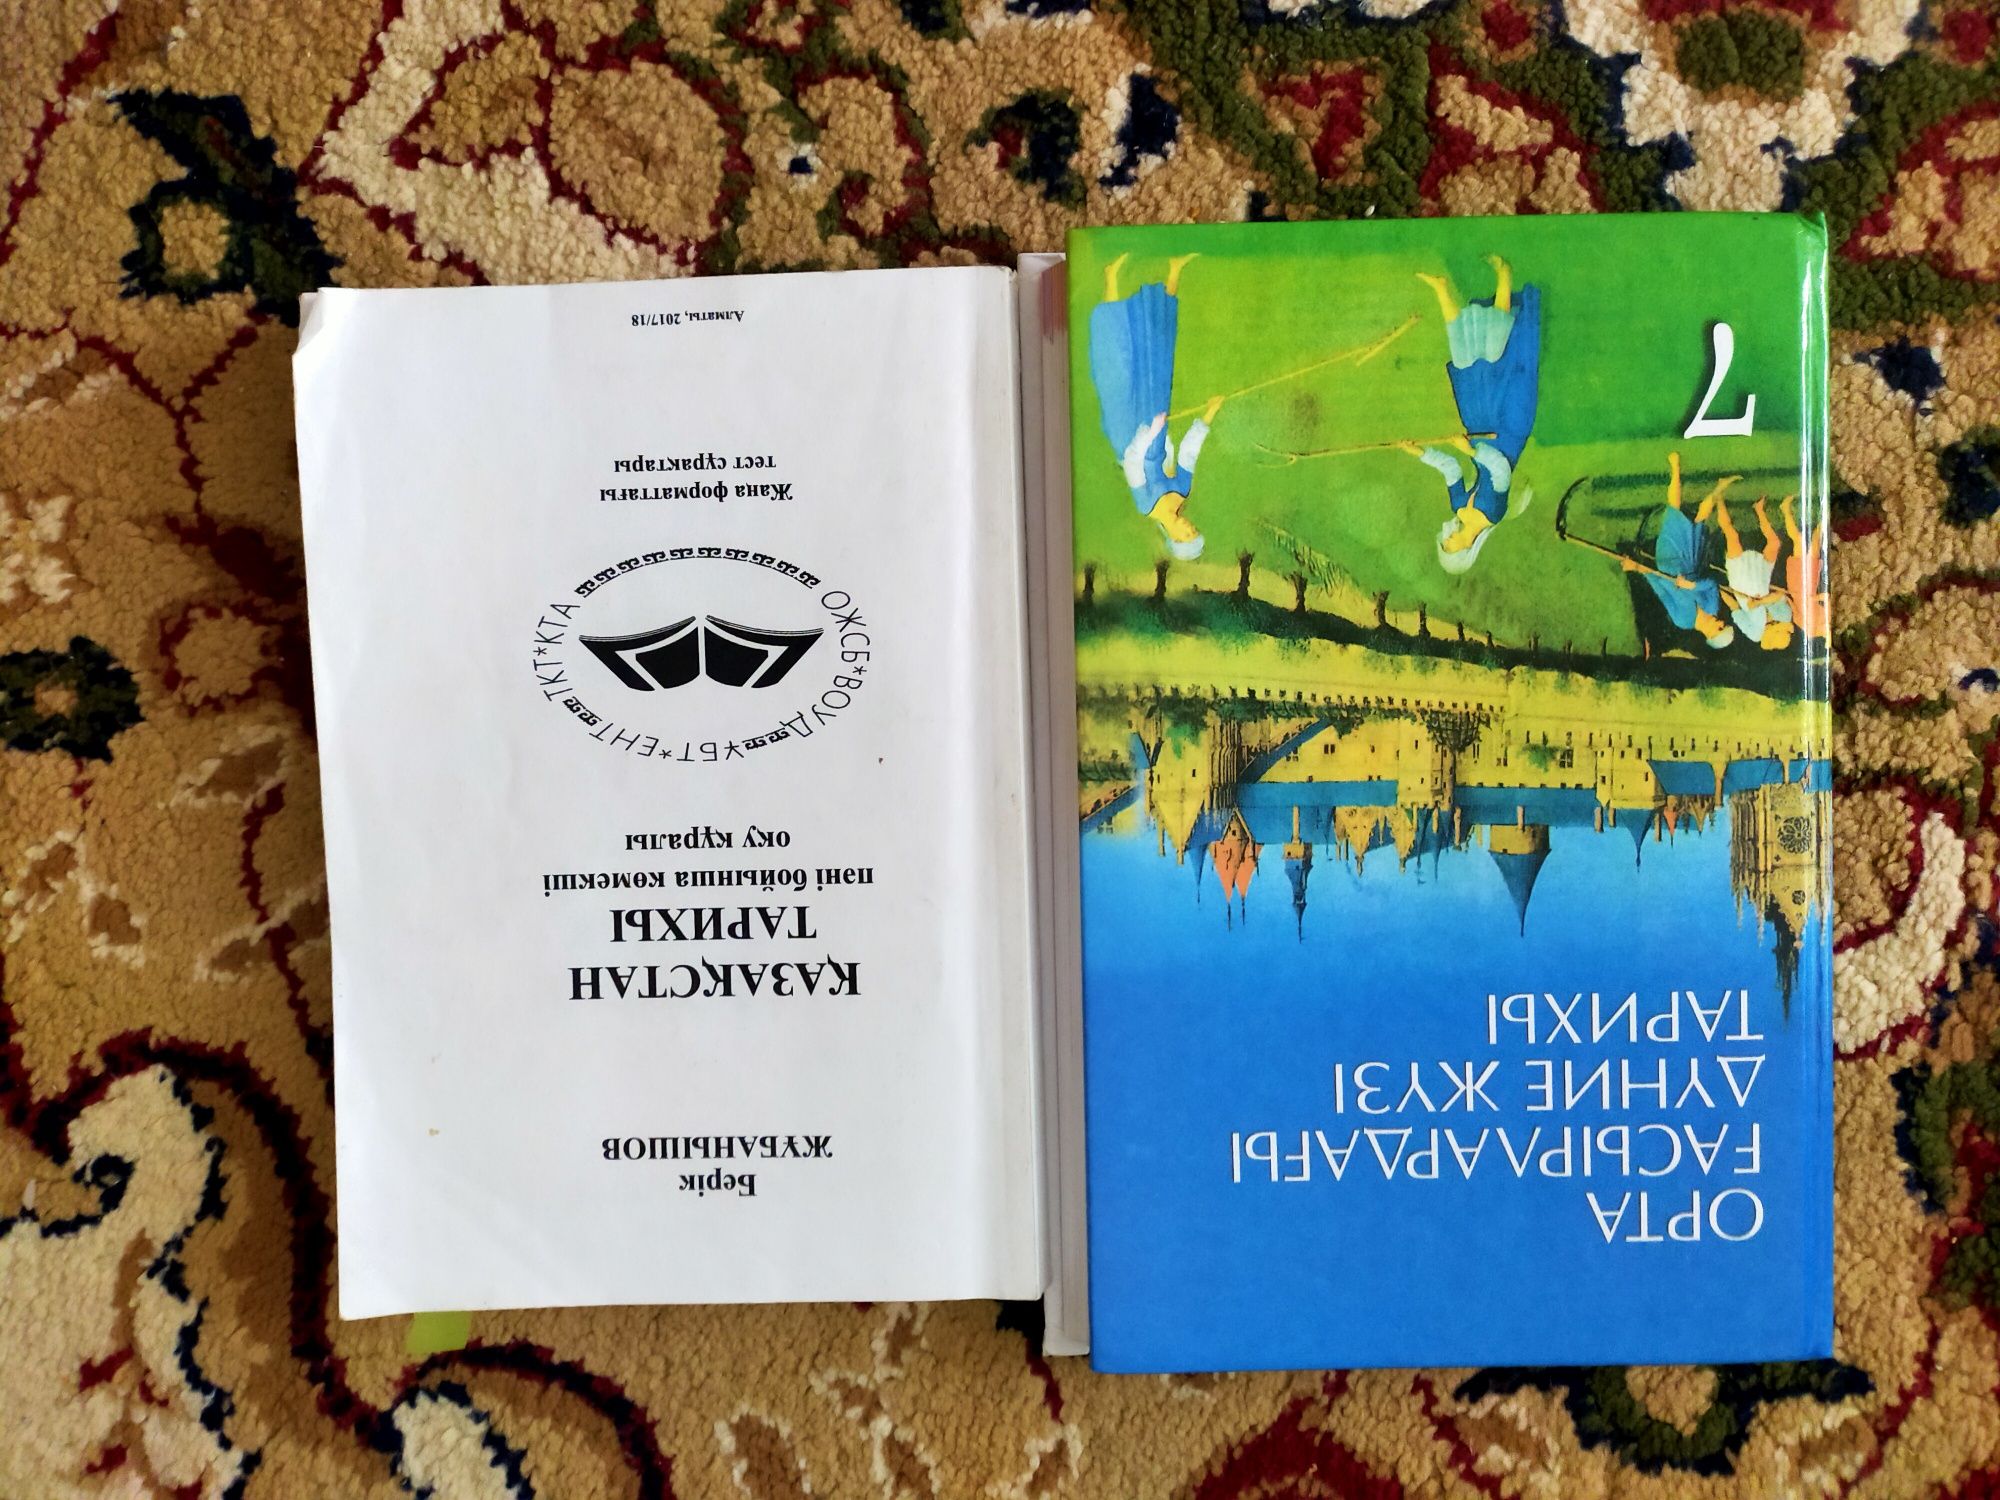 Продам школьные книги на казахском